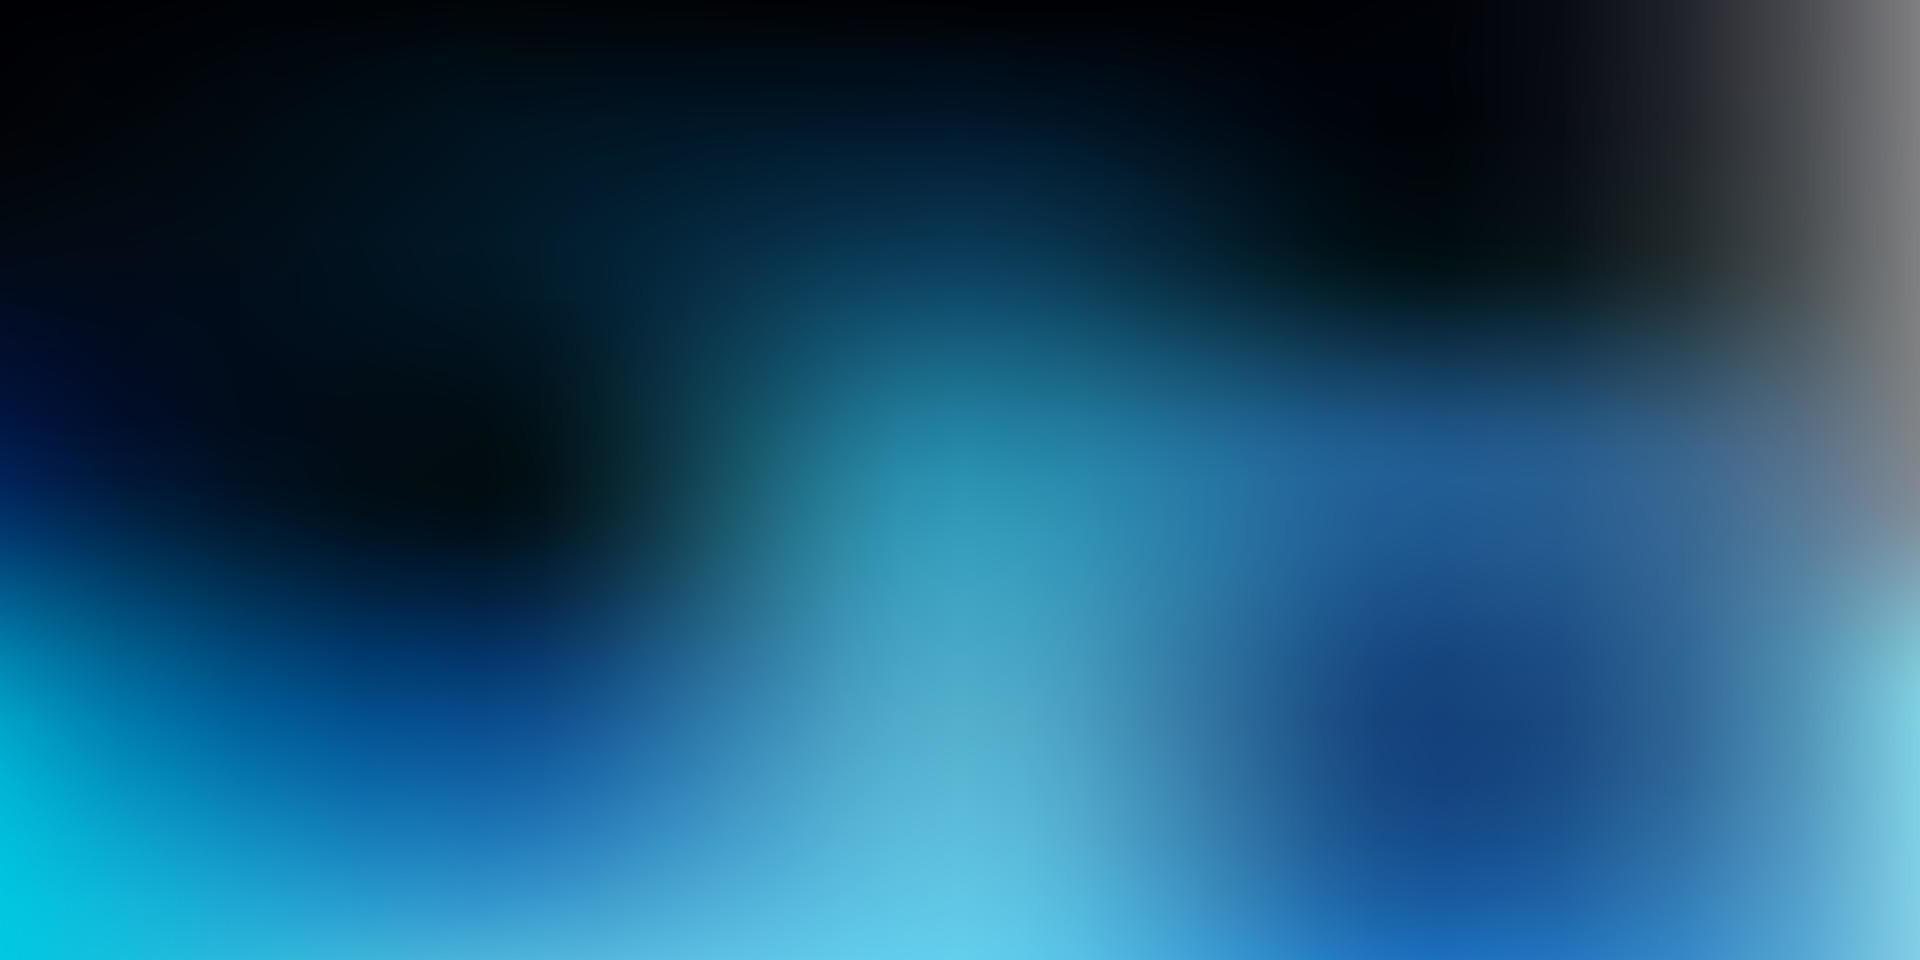 Dark blue vector blurred pattern.